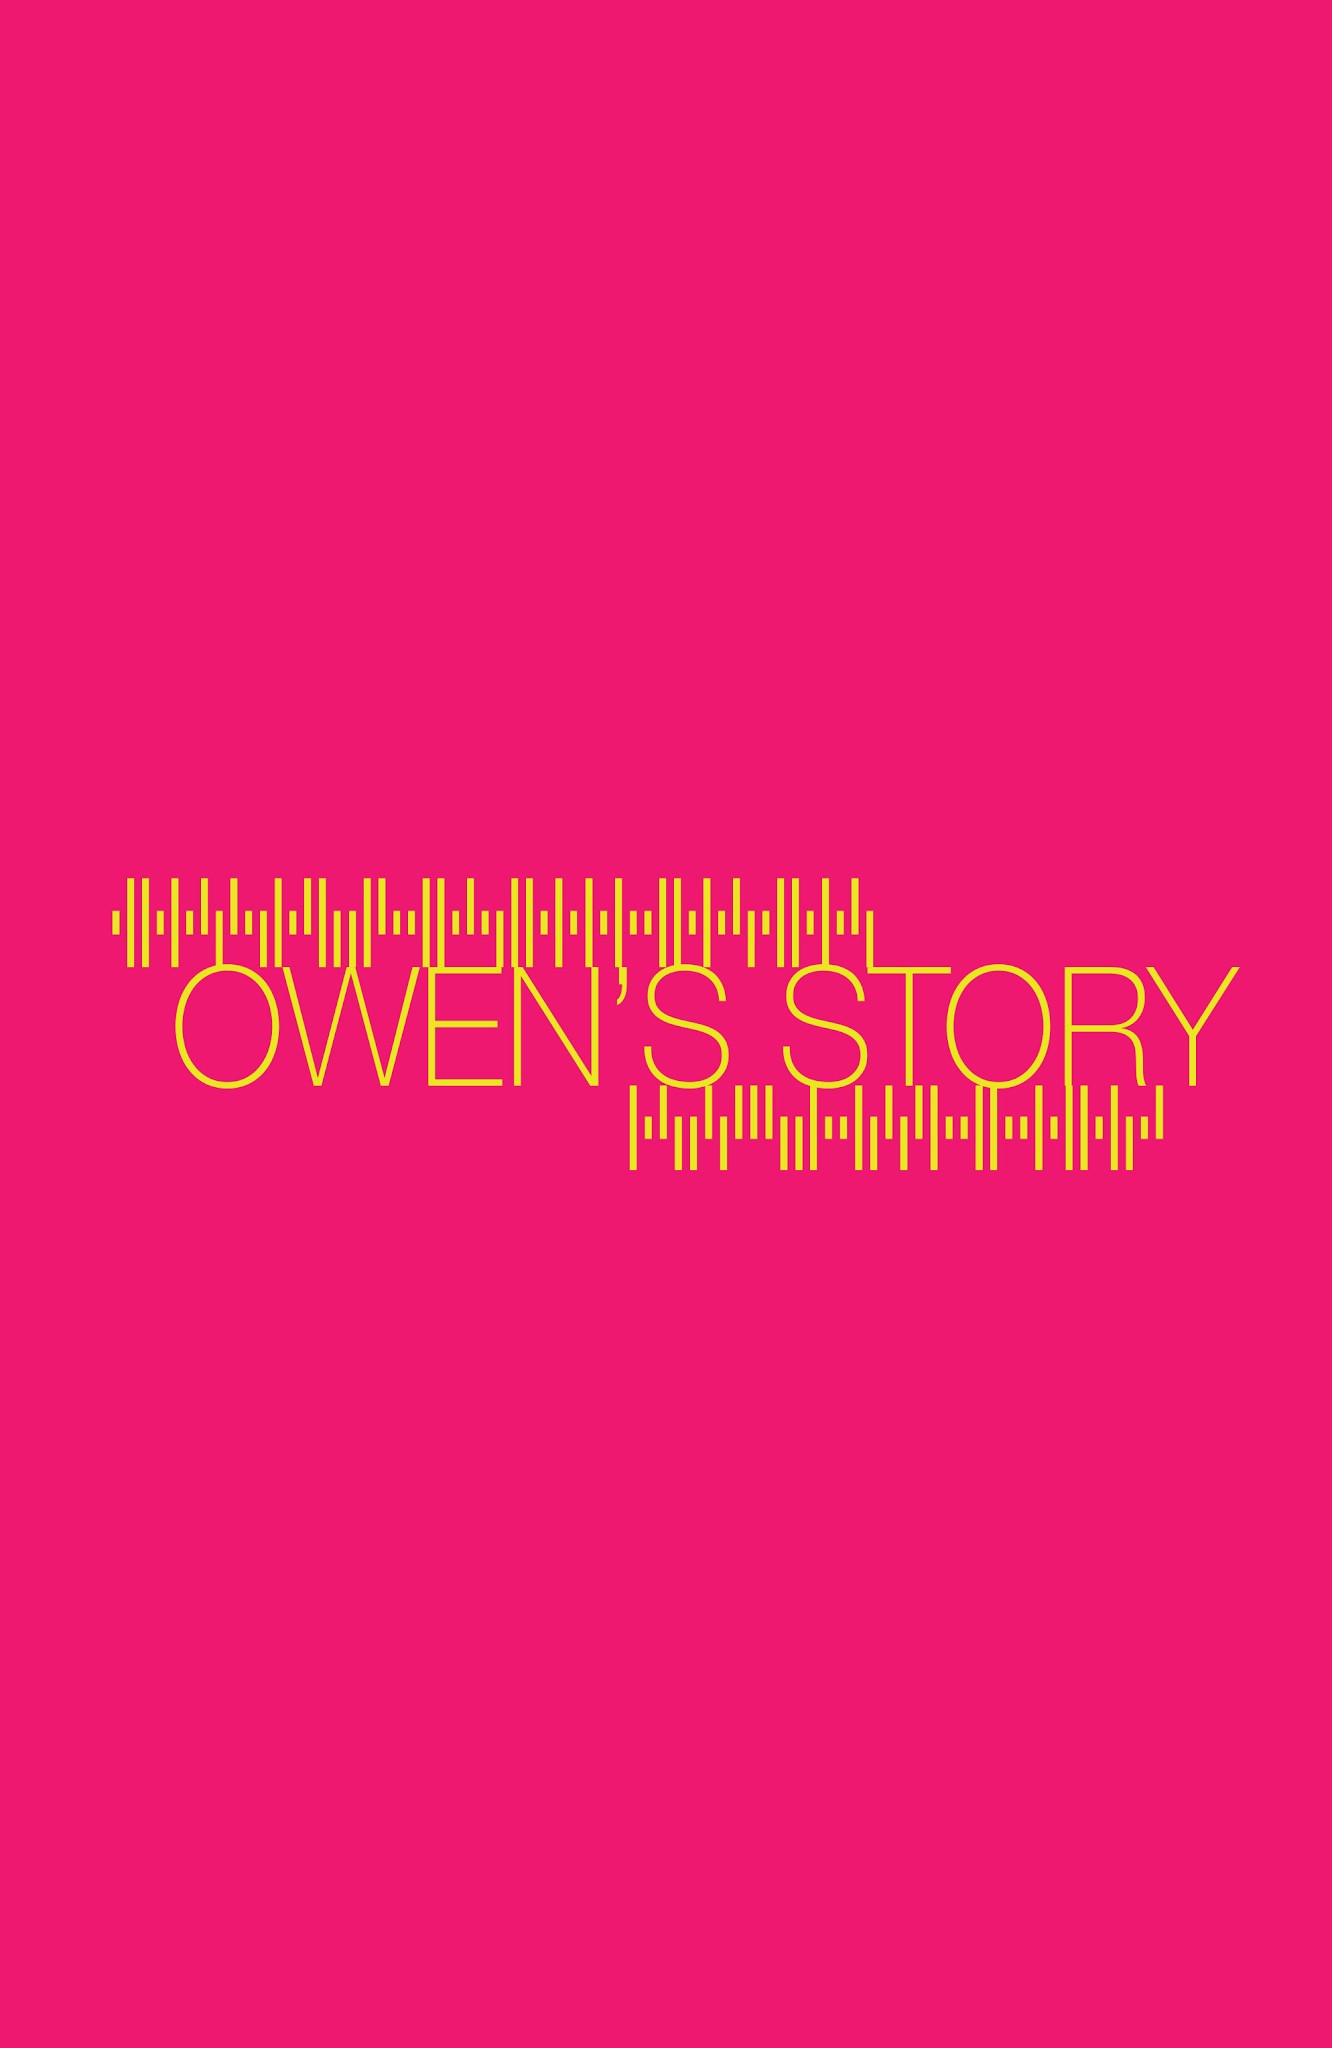 Read online Secret Weapons: Owen's Story comic -  Issue # Full - 2